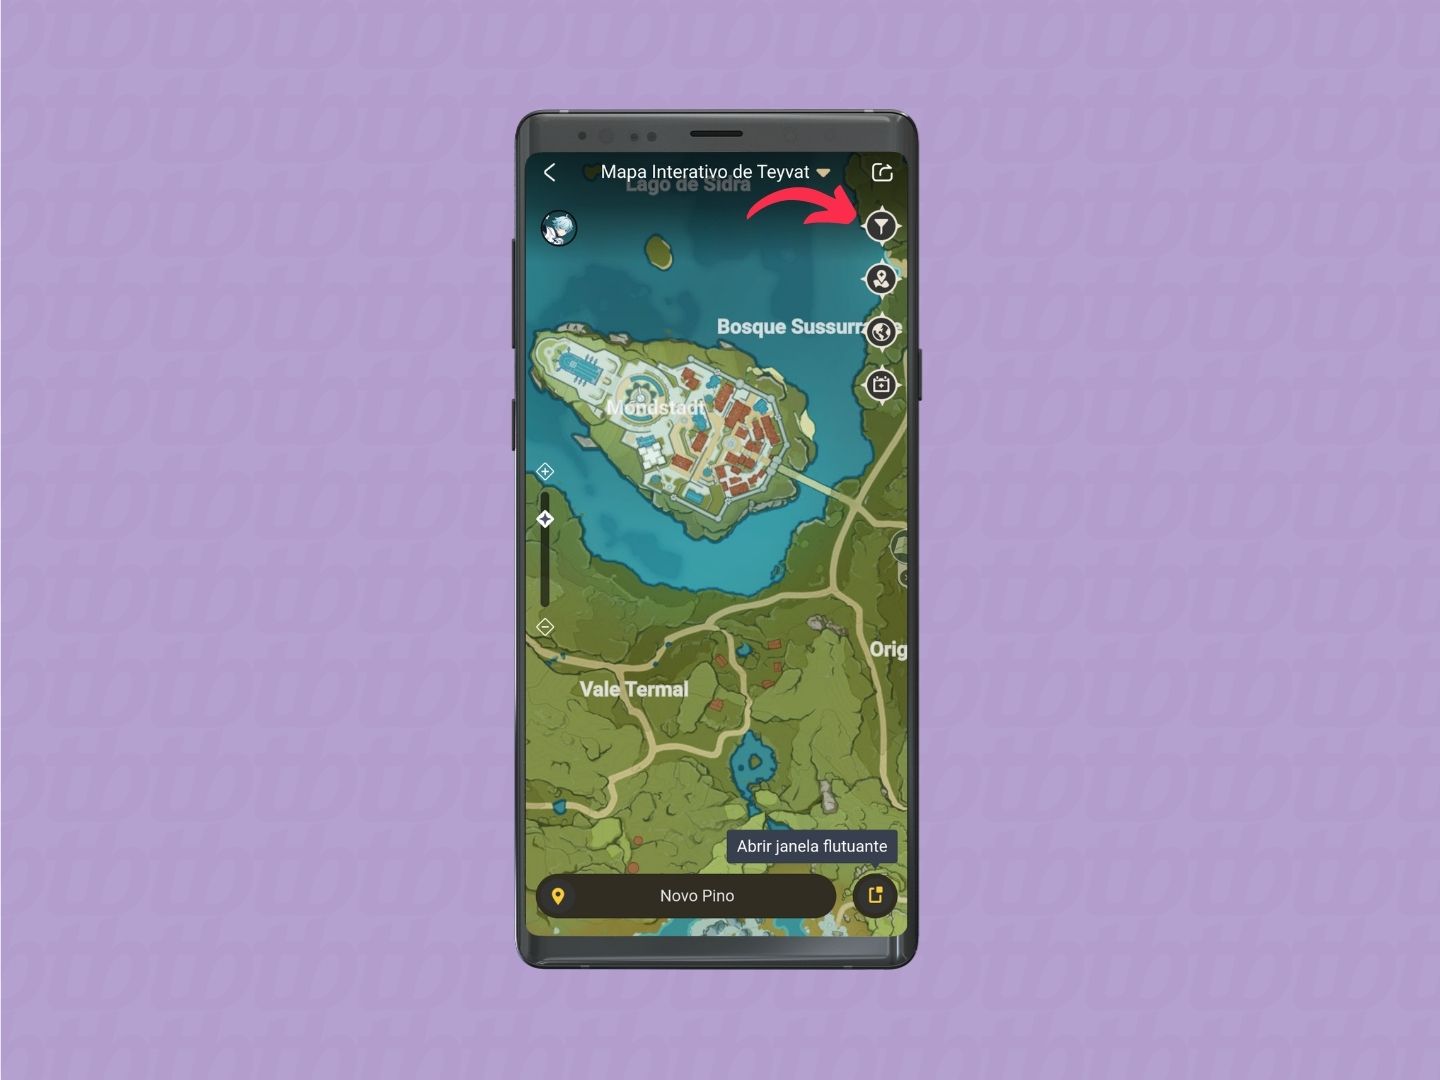 Captura de tela do Mapa Interativo de Genshin Impact no aplicativo HoYoLAB